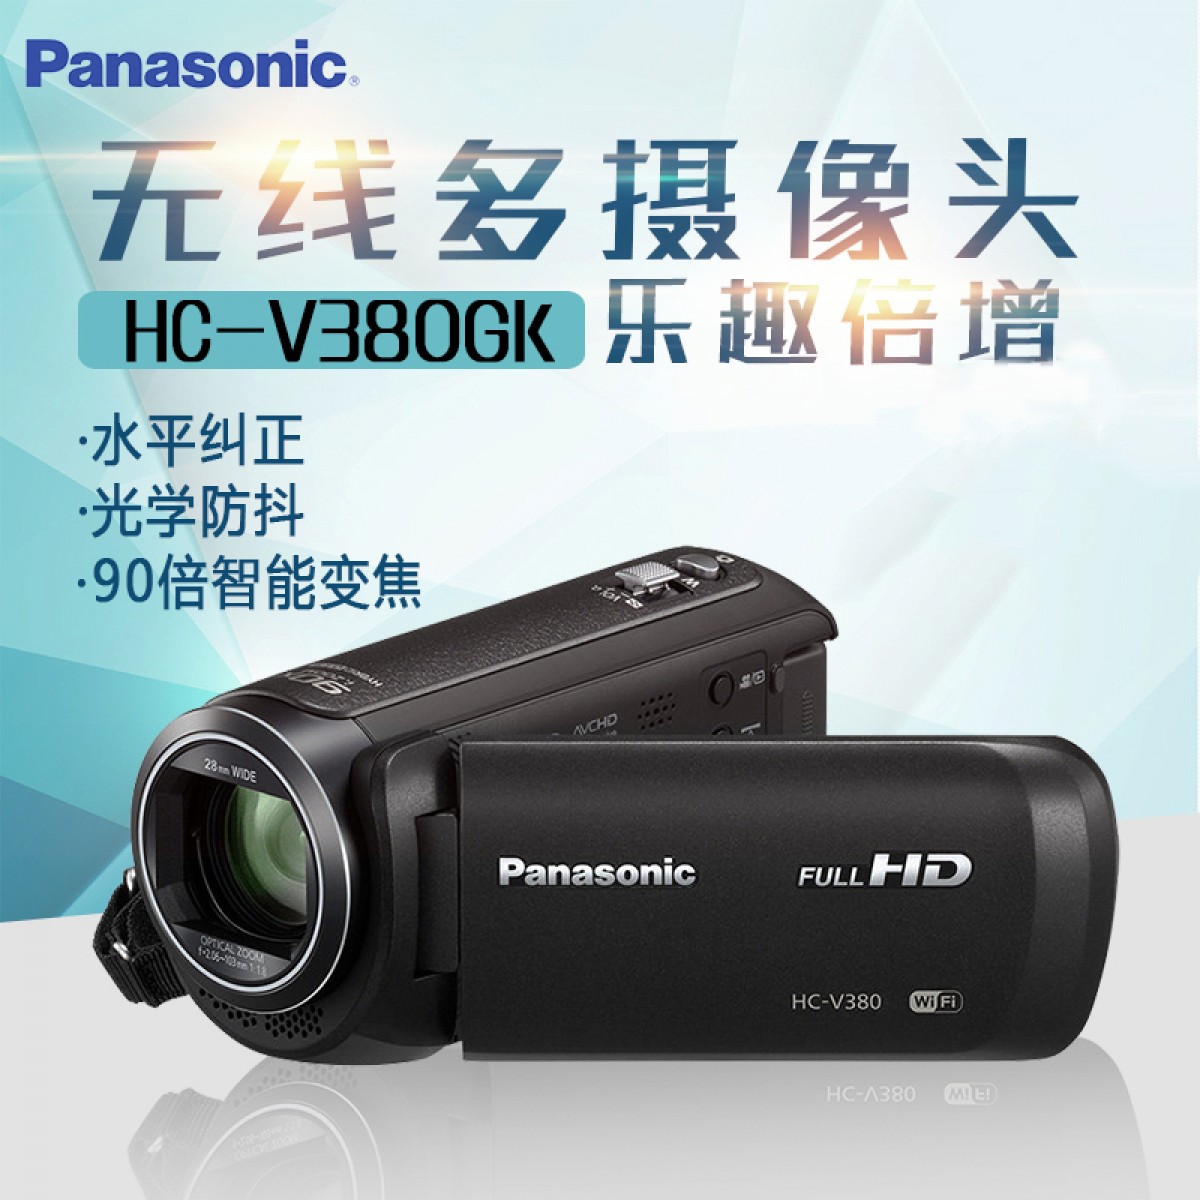 Panasonic/松下 HC-V380GK 高清家用摄像机 90倍智能变焦支持WIFI